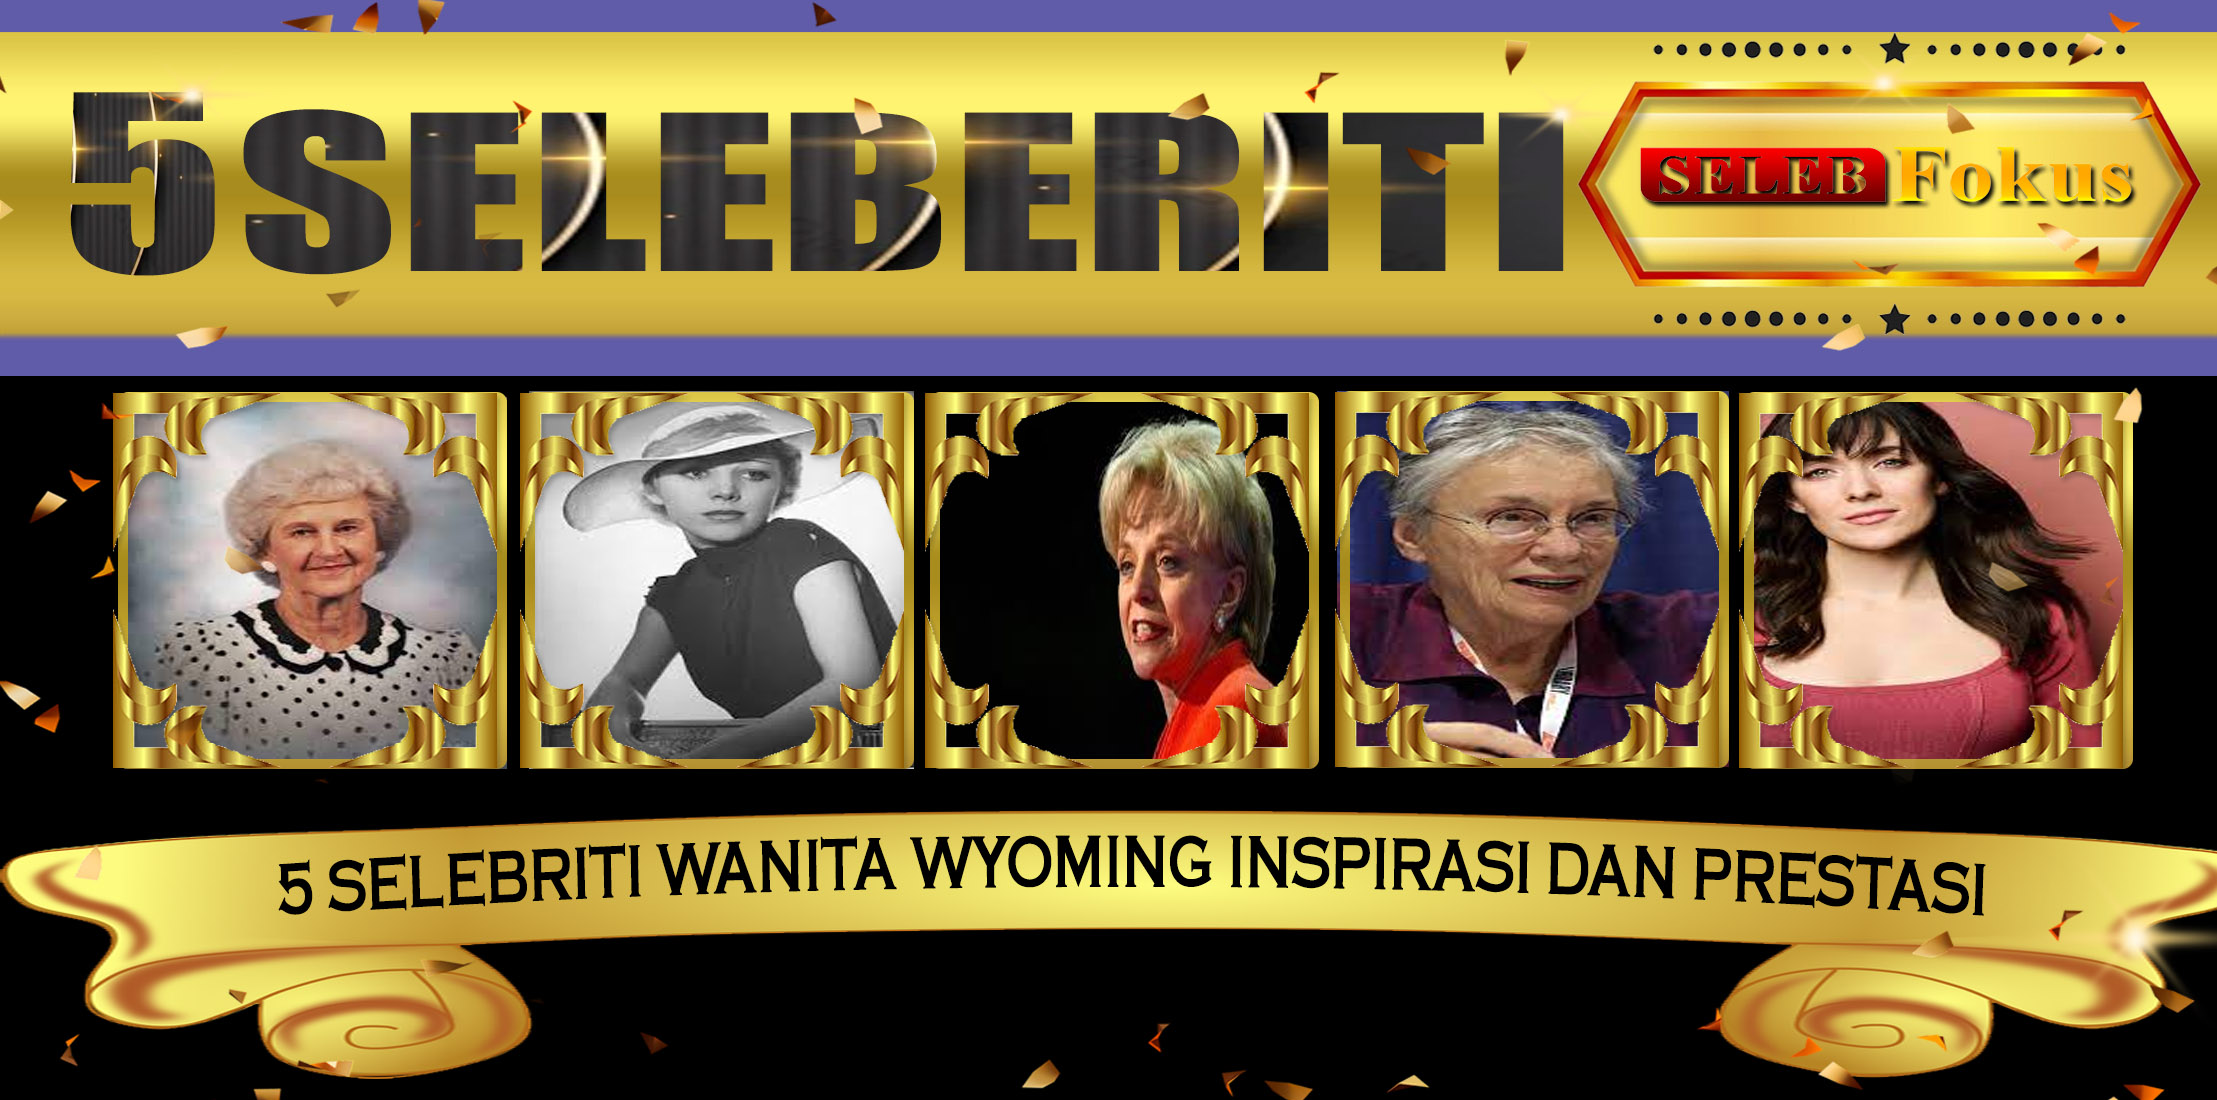 5 Selebriti Wanita Wyoming Inspirasi dan Prestasi